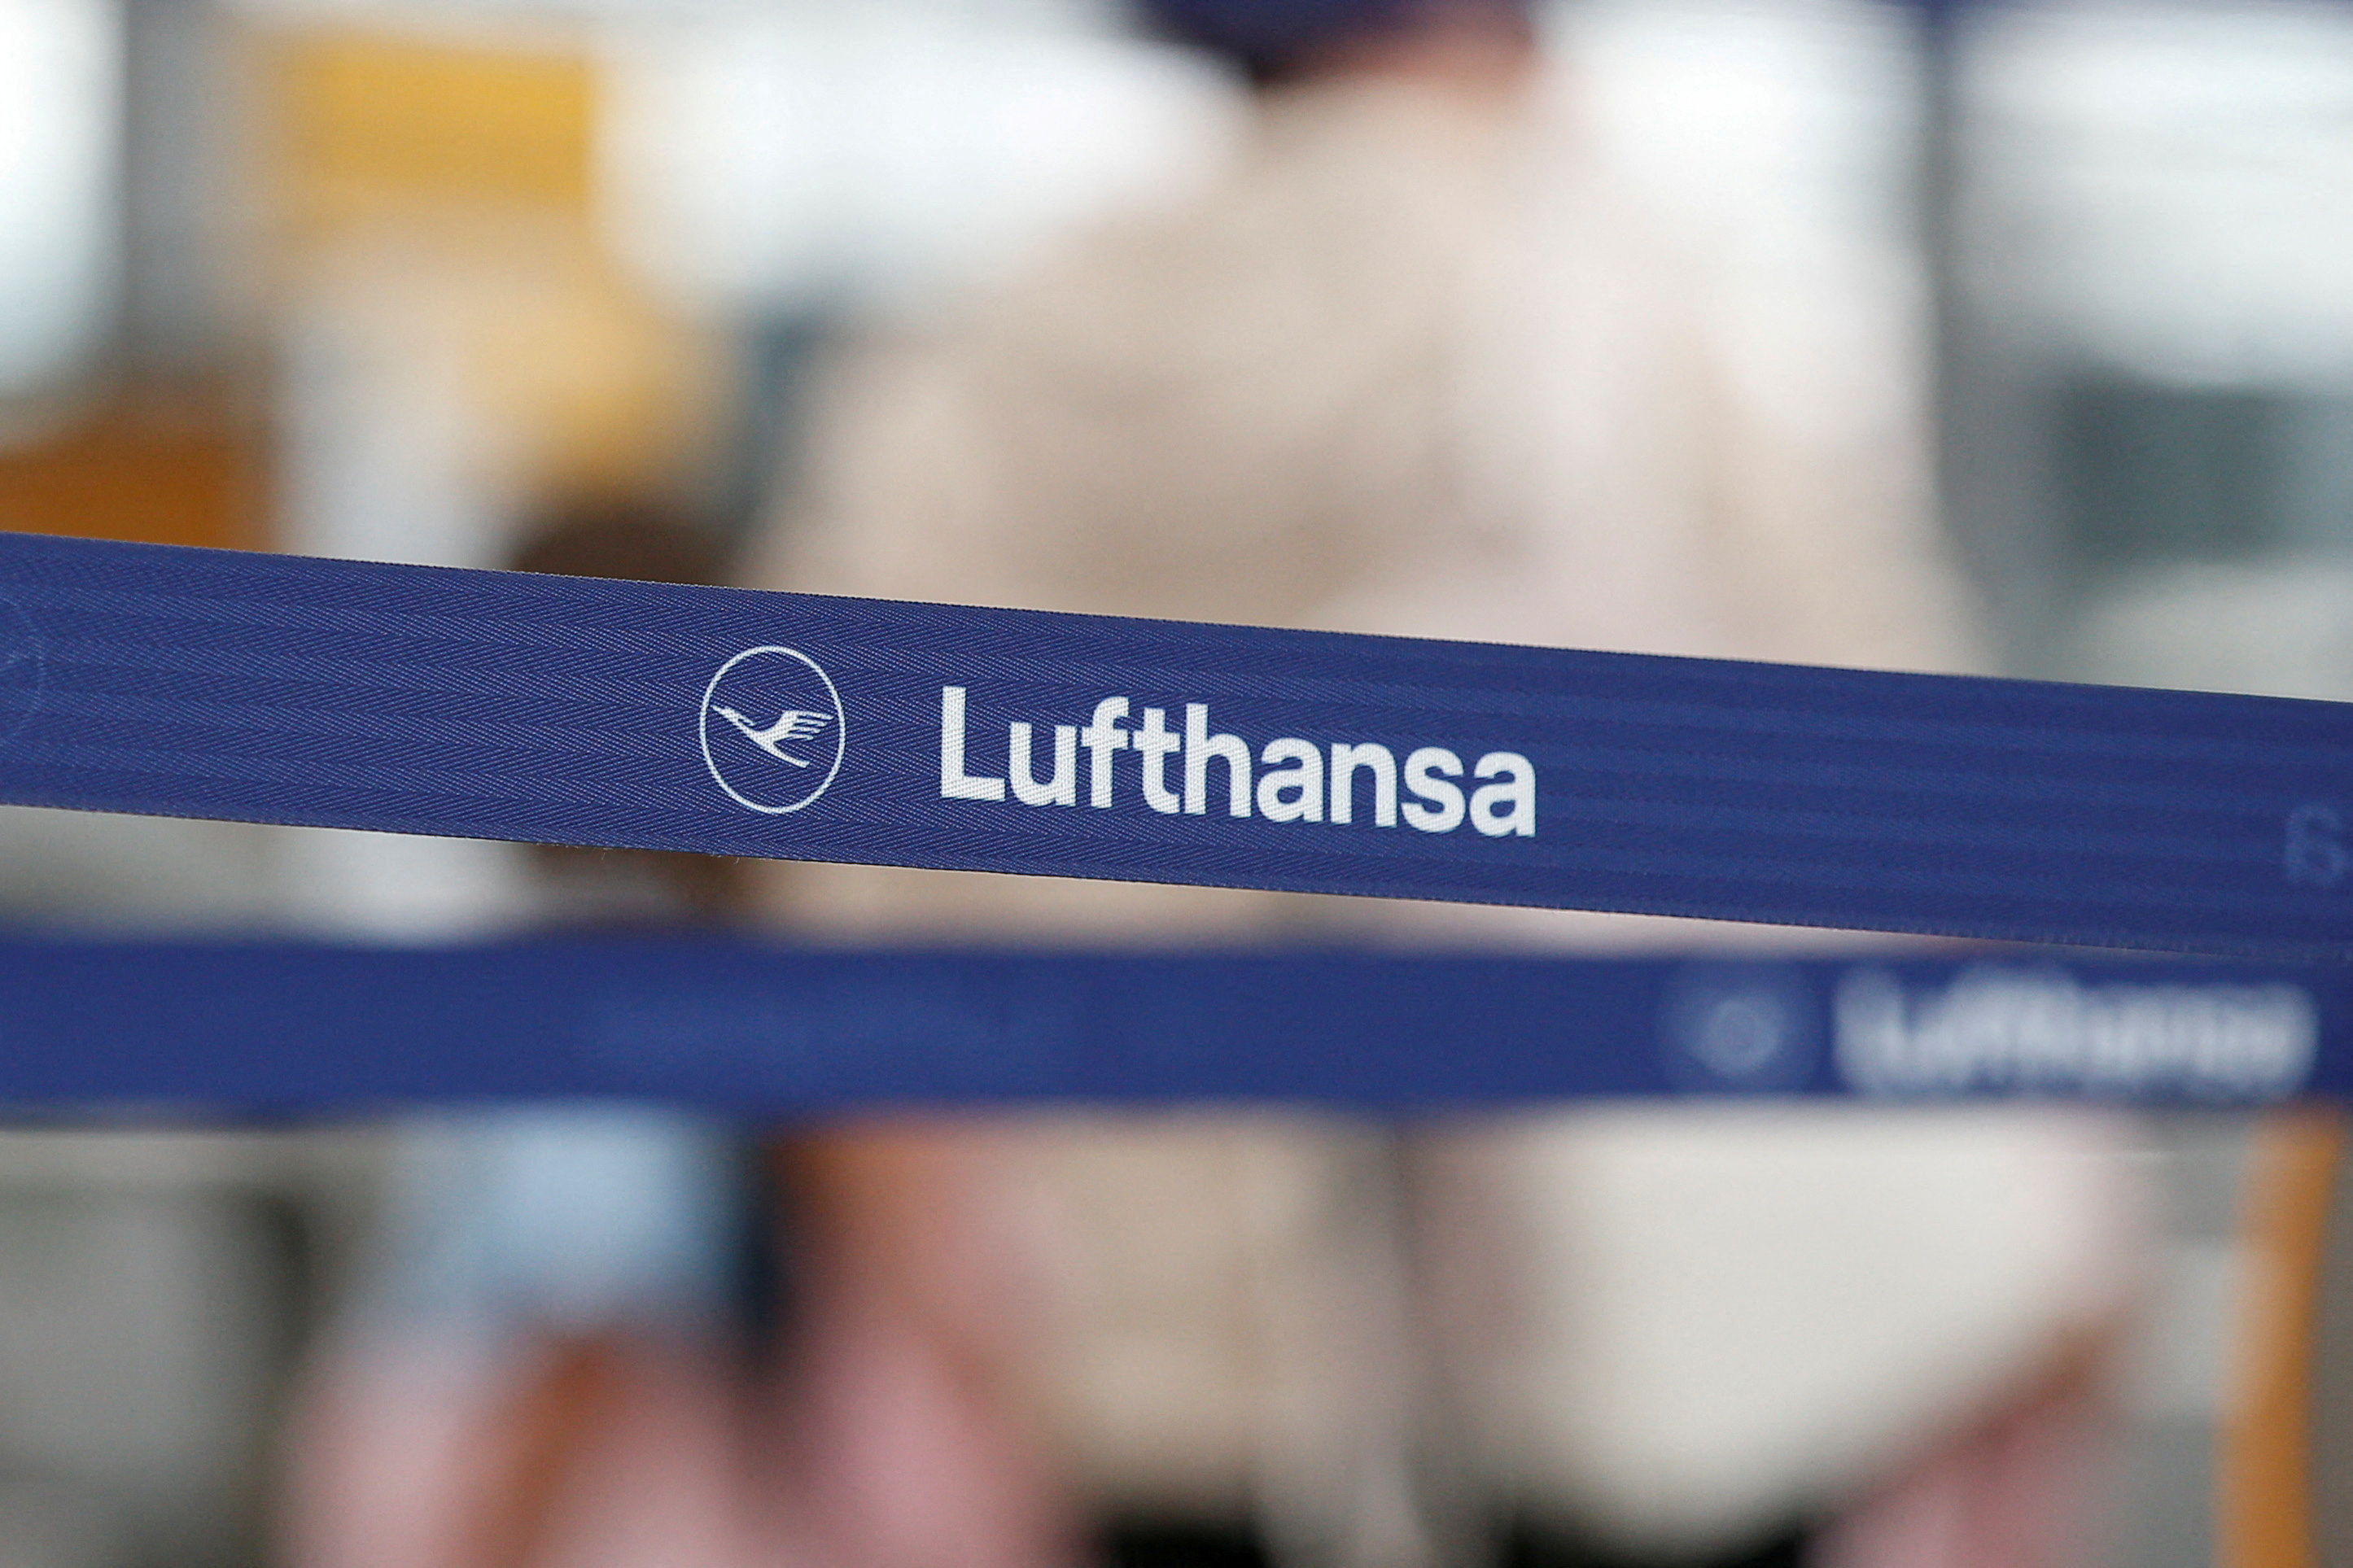 Aérien : Bruxelles bouscule Lufthansa avec une enquête sur son rachat d'ITA airways